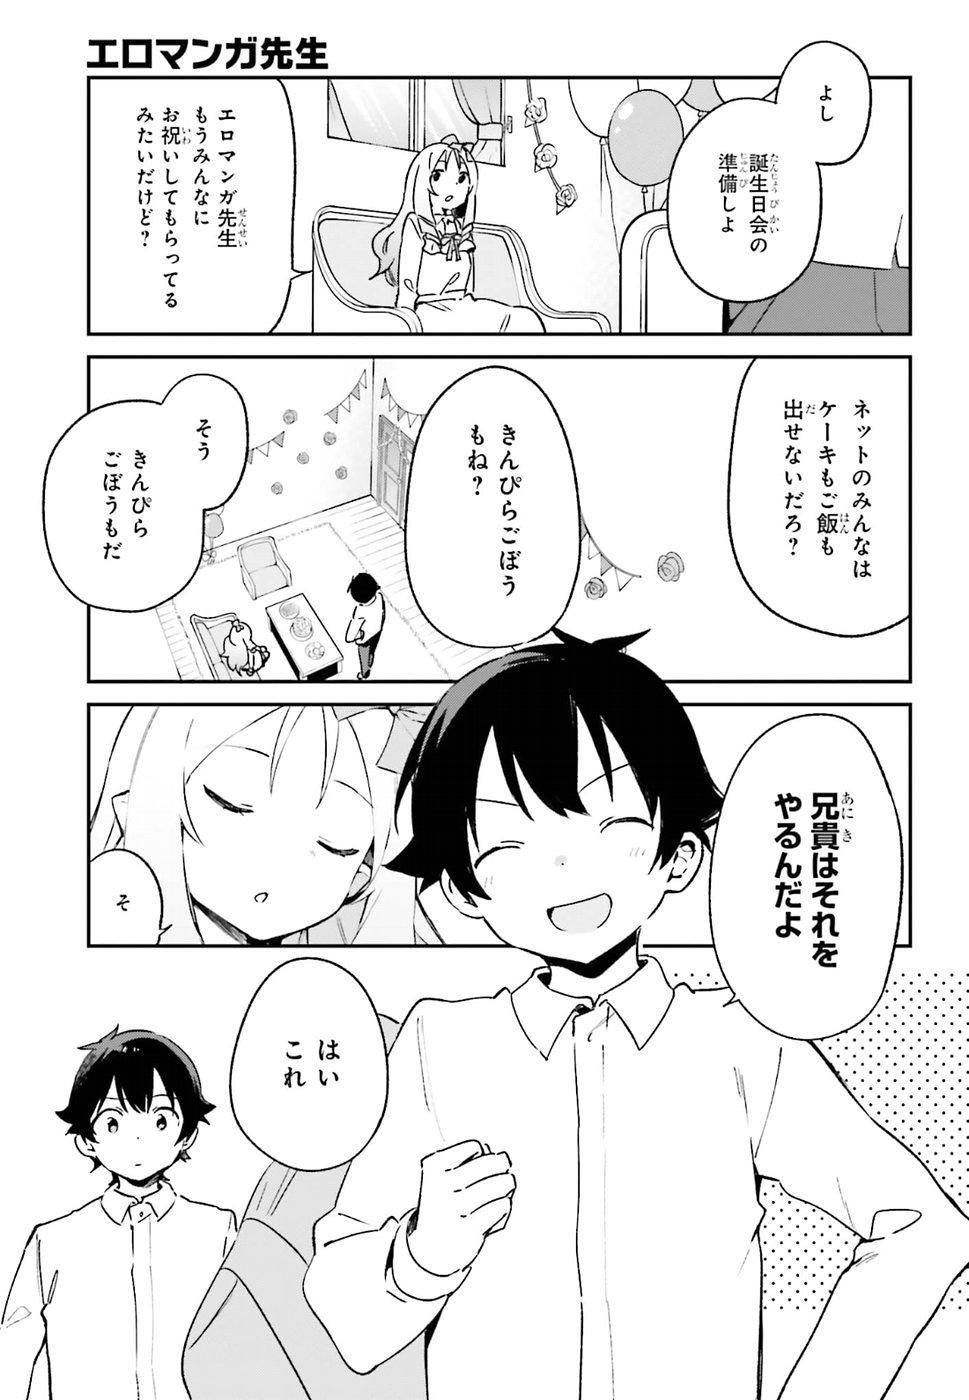 Ero Manga Sensei - Chapter 50 - Page 13